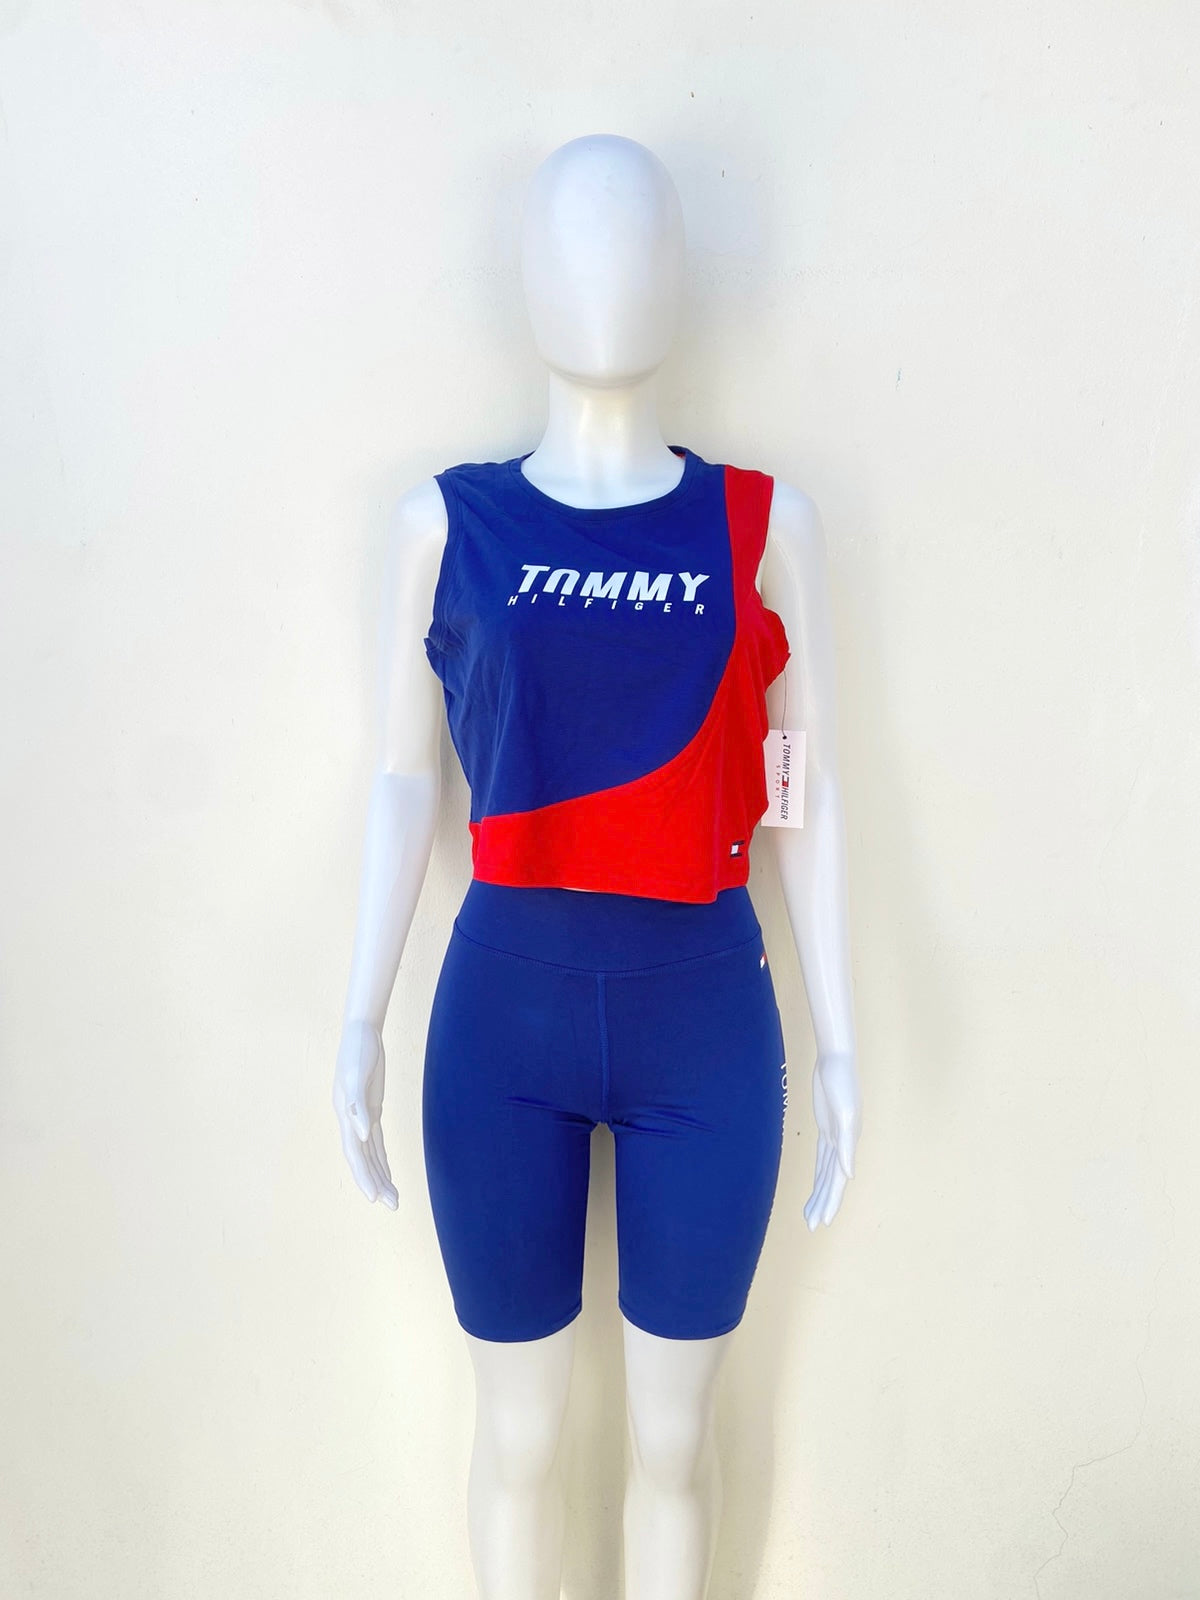 Conjunto Tommy Hilfiger original legging antes la rodilla y top sin mangas azul con rojo y letras TOMMY HILFIGER en blanco.